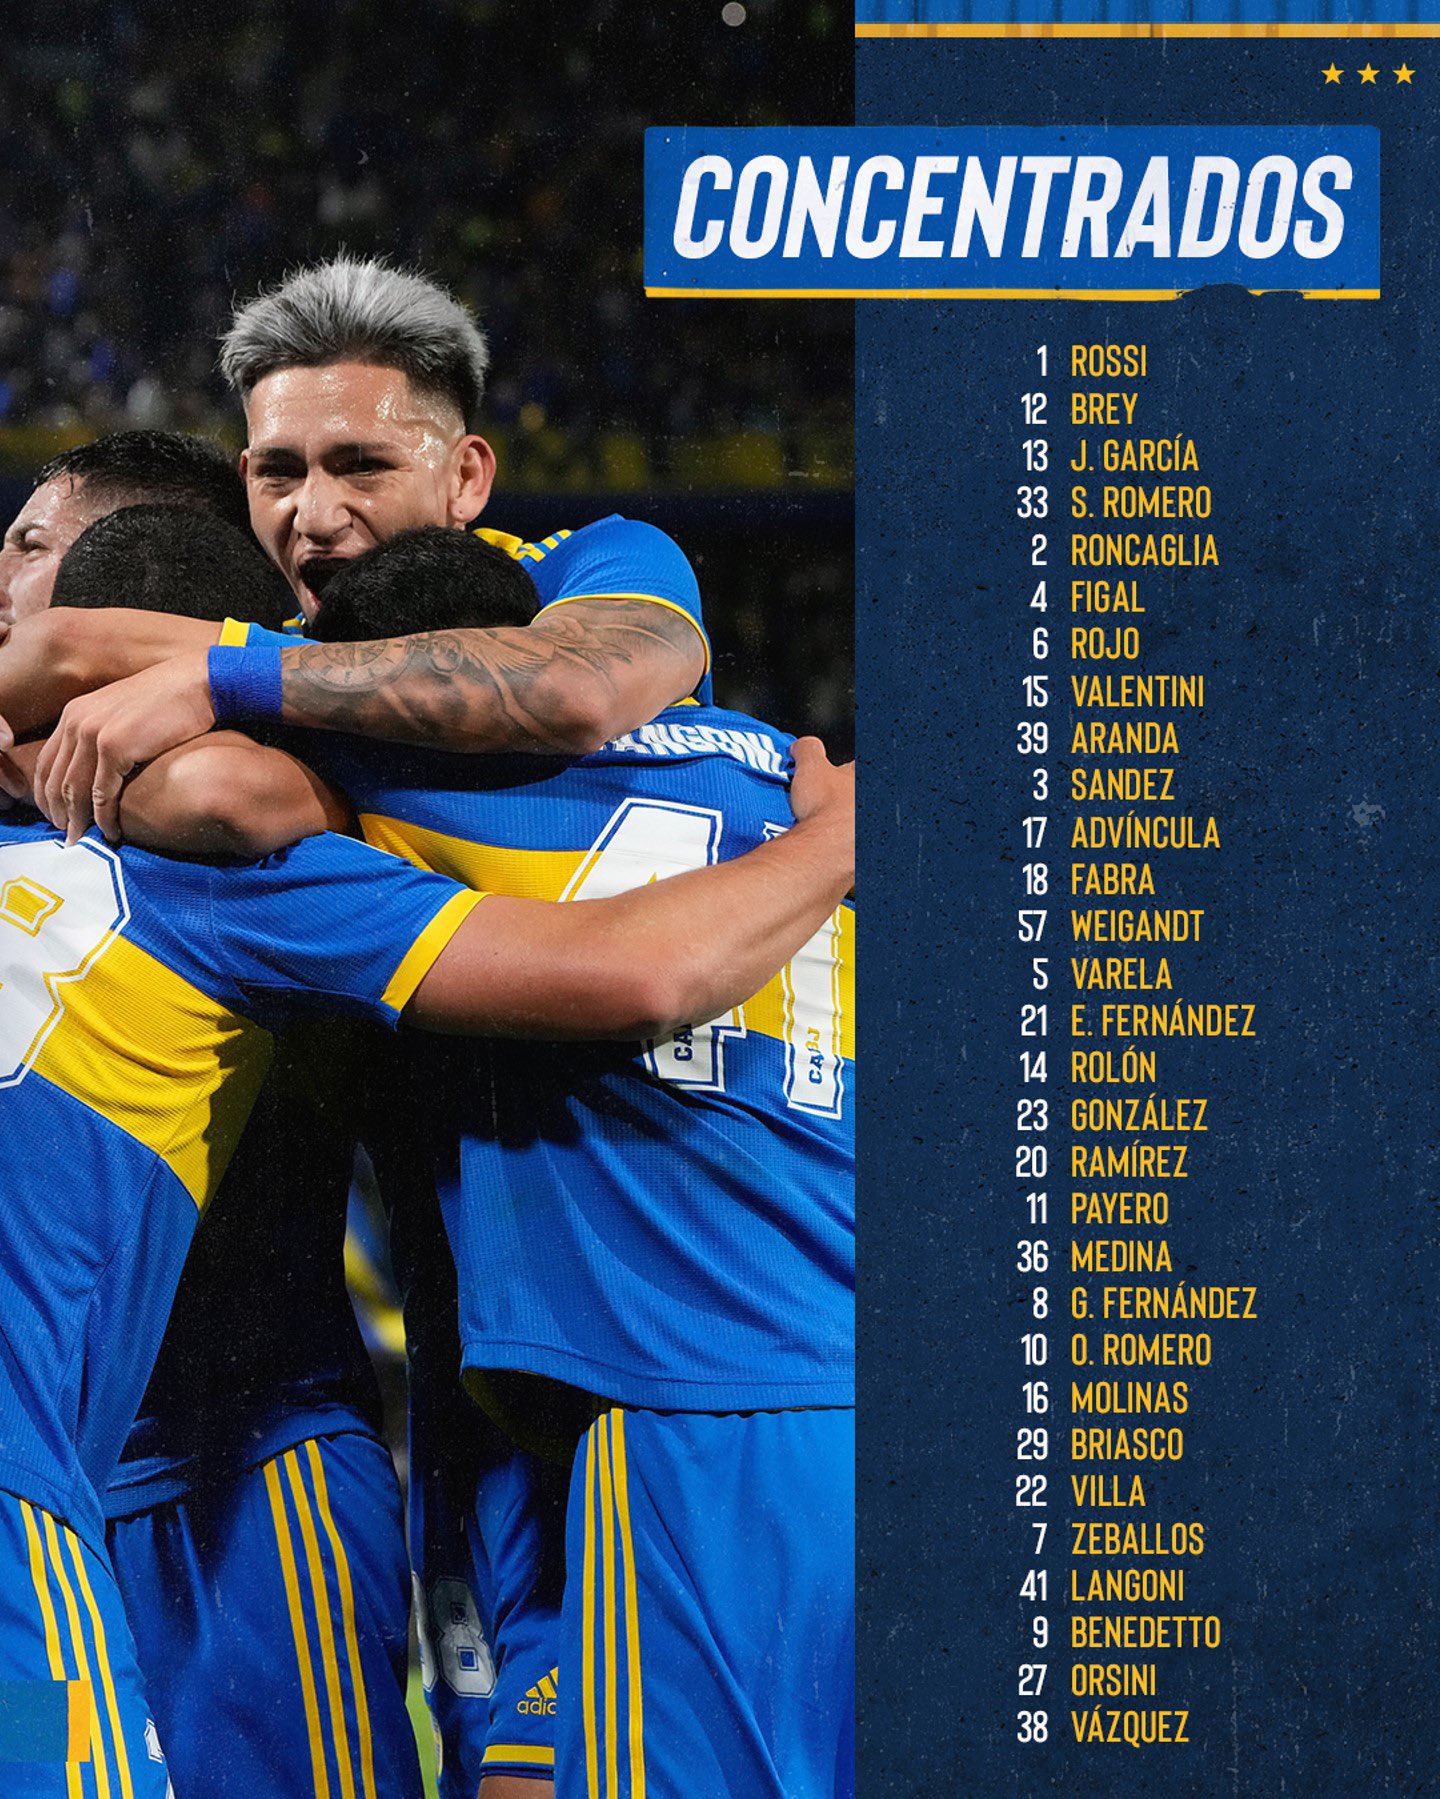 Los convocados de Boca Juniors para enfrentar a Racing